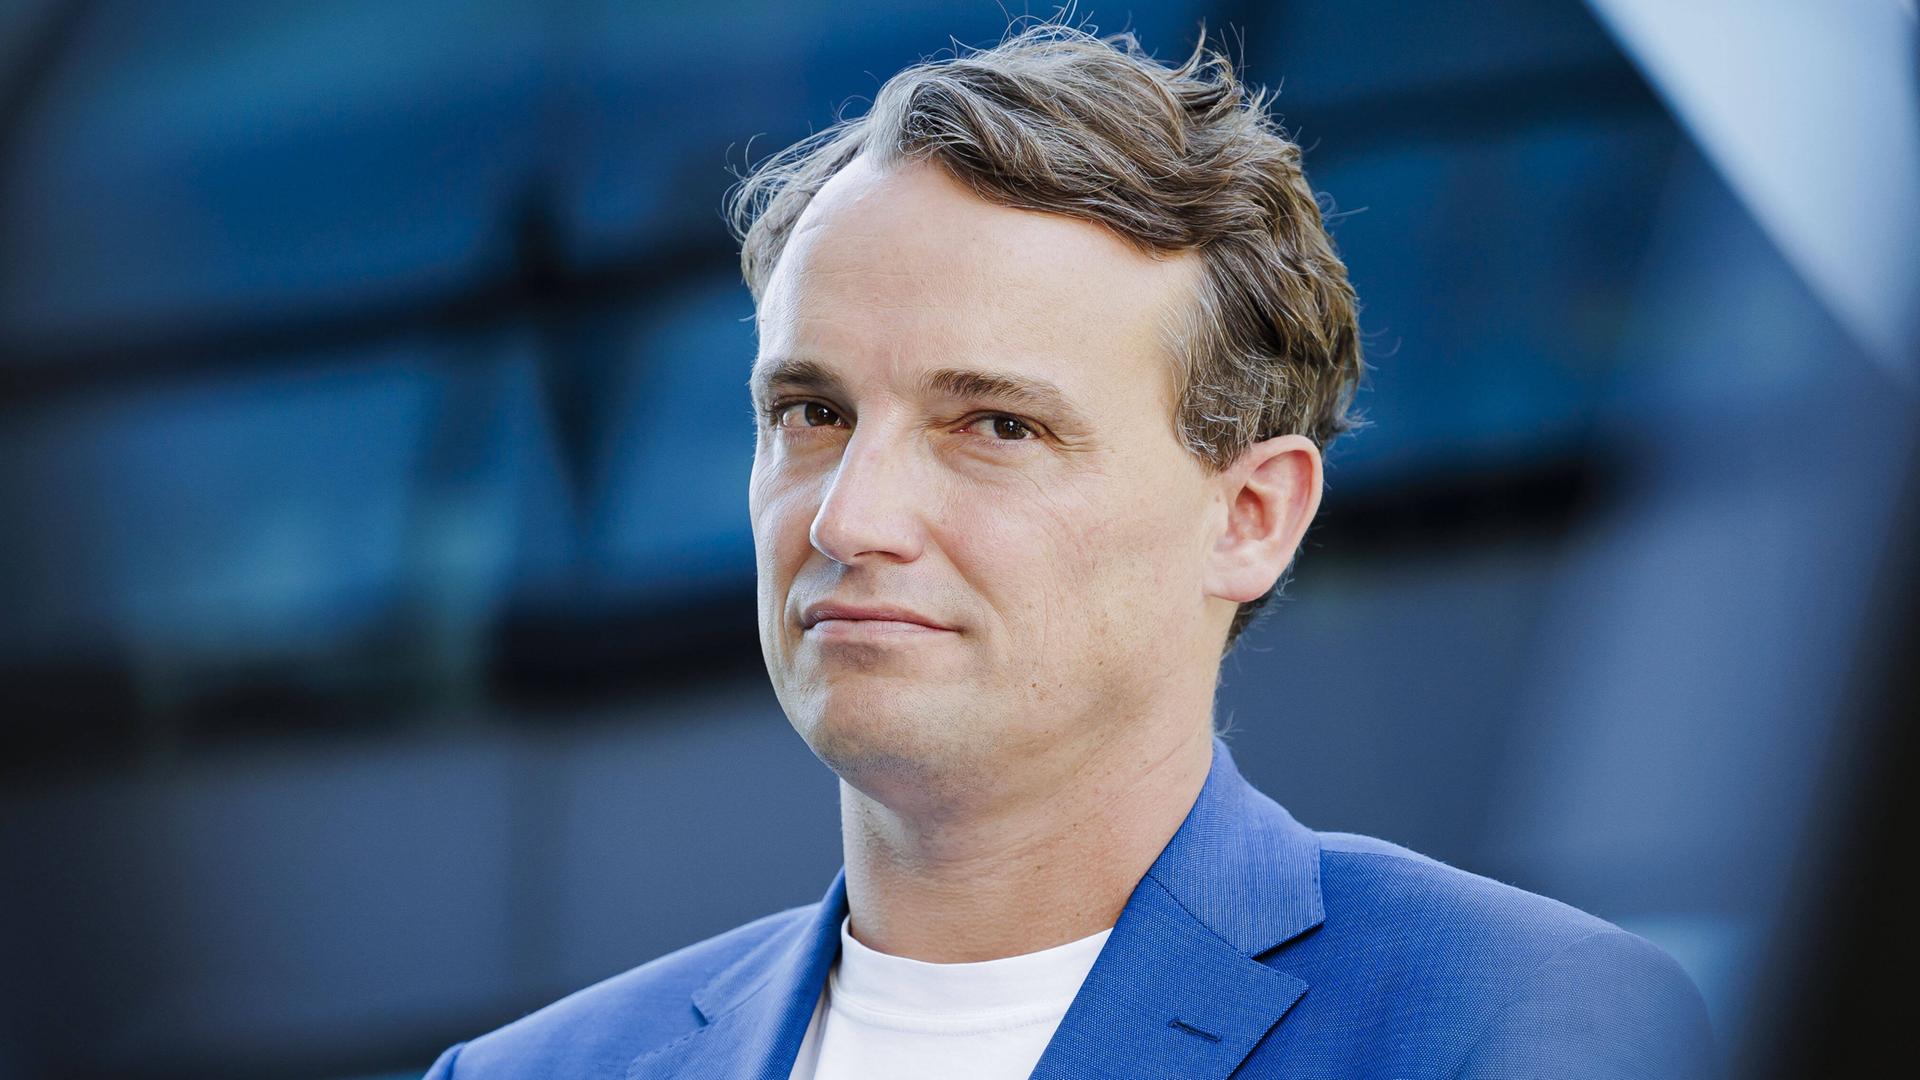 Christian Klein, Vorstandssprecher und Mitglied des Vorstands der SAP SE, portraitiert im blauen Anzug.